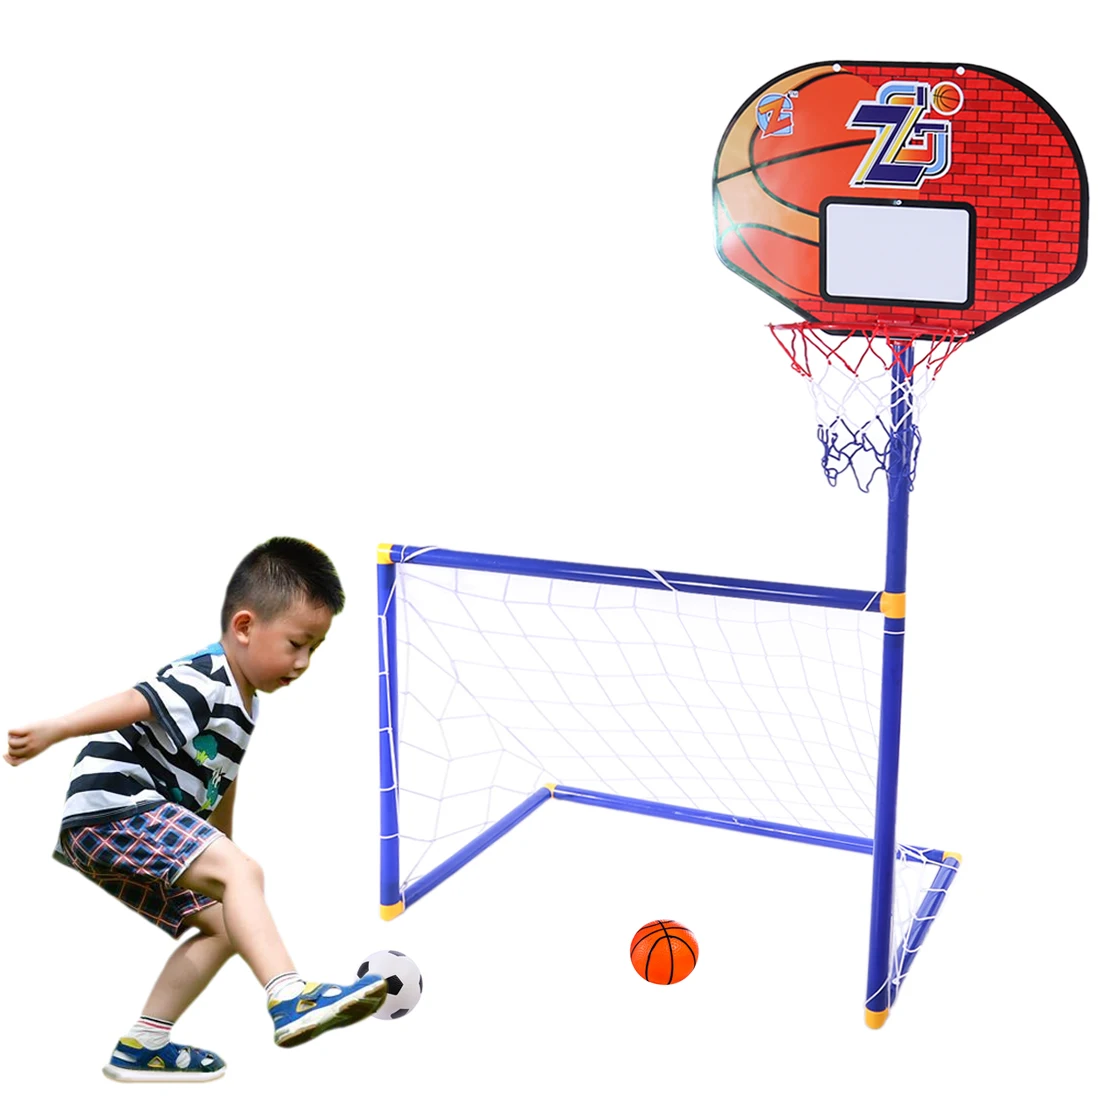 Rowsfire 2 в 1 детское спортивное снаряжение футбольные ворота баскетбольные стойки для детей Наружная игрушка-ZG270-28